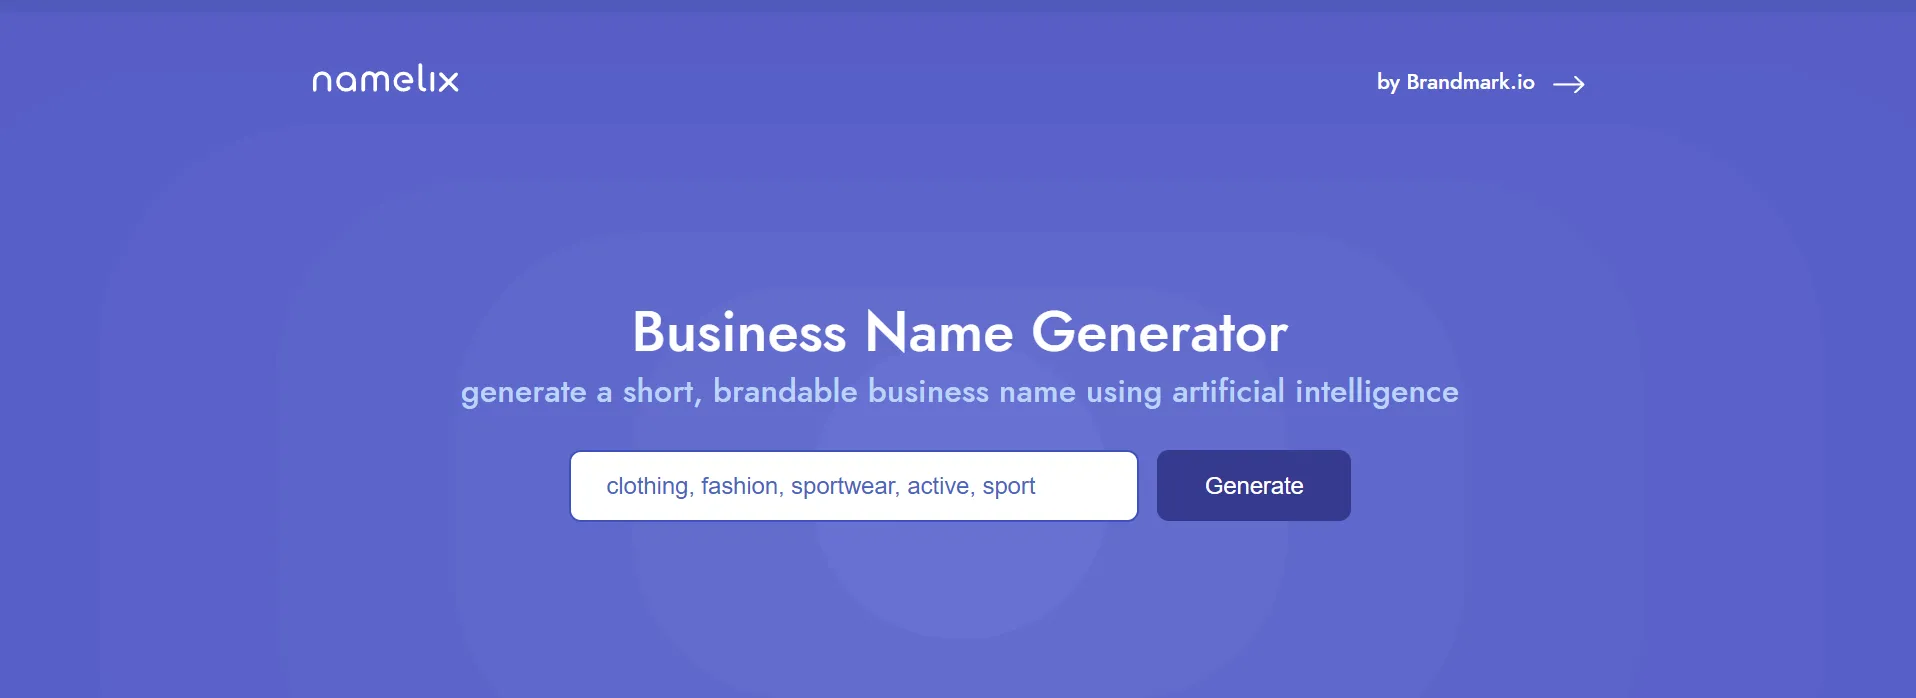 Namelix business name generator AI